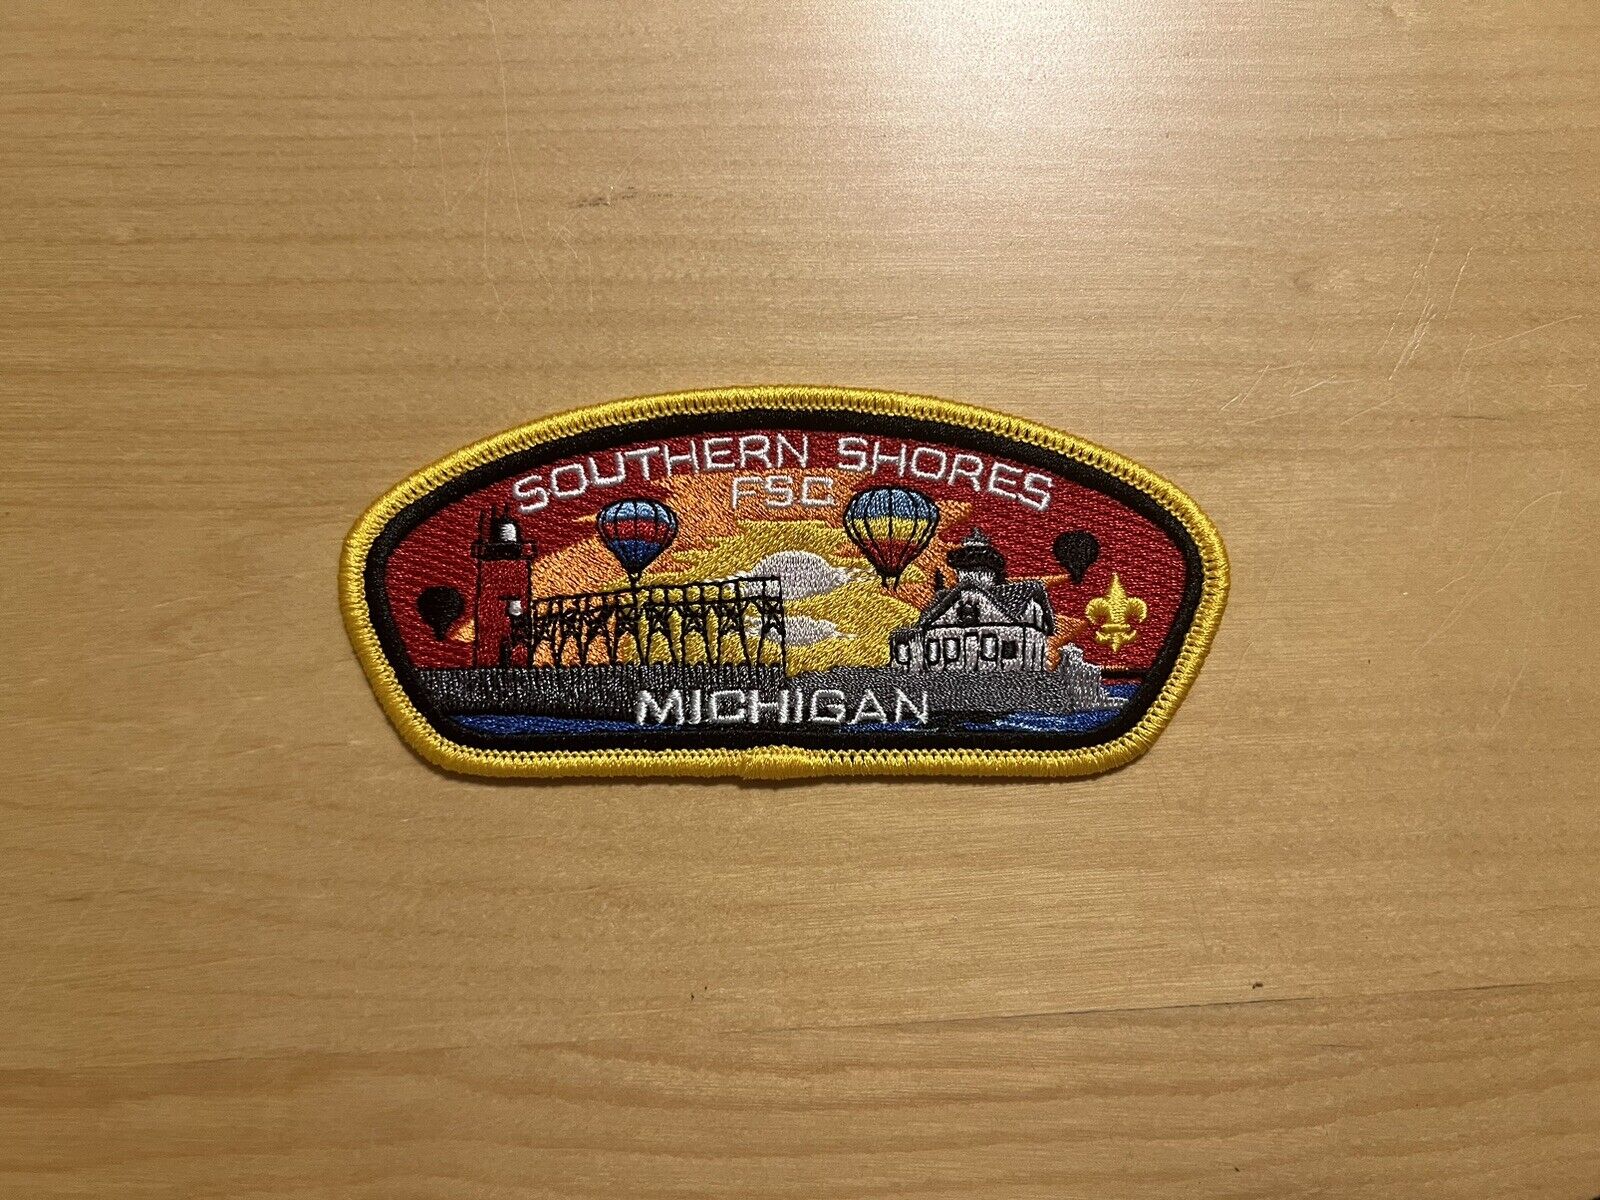 Southern Shores FSC Michigan Strip BSA Boy Scout Shoulder Patch CSP DEAD COUNCIL